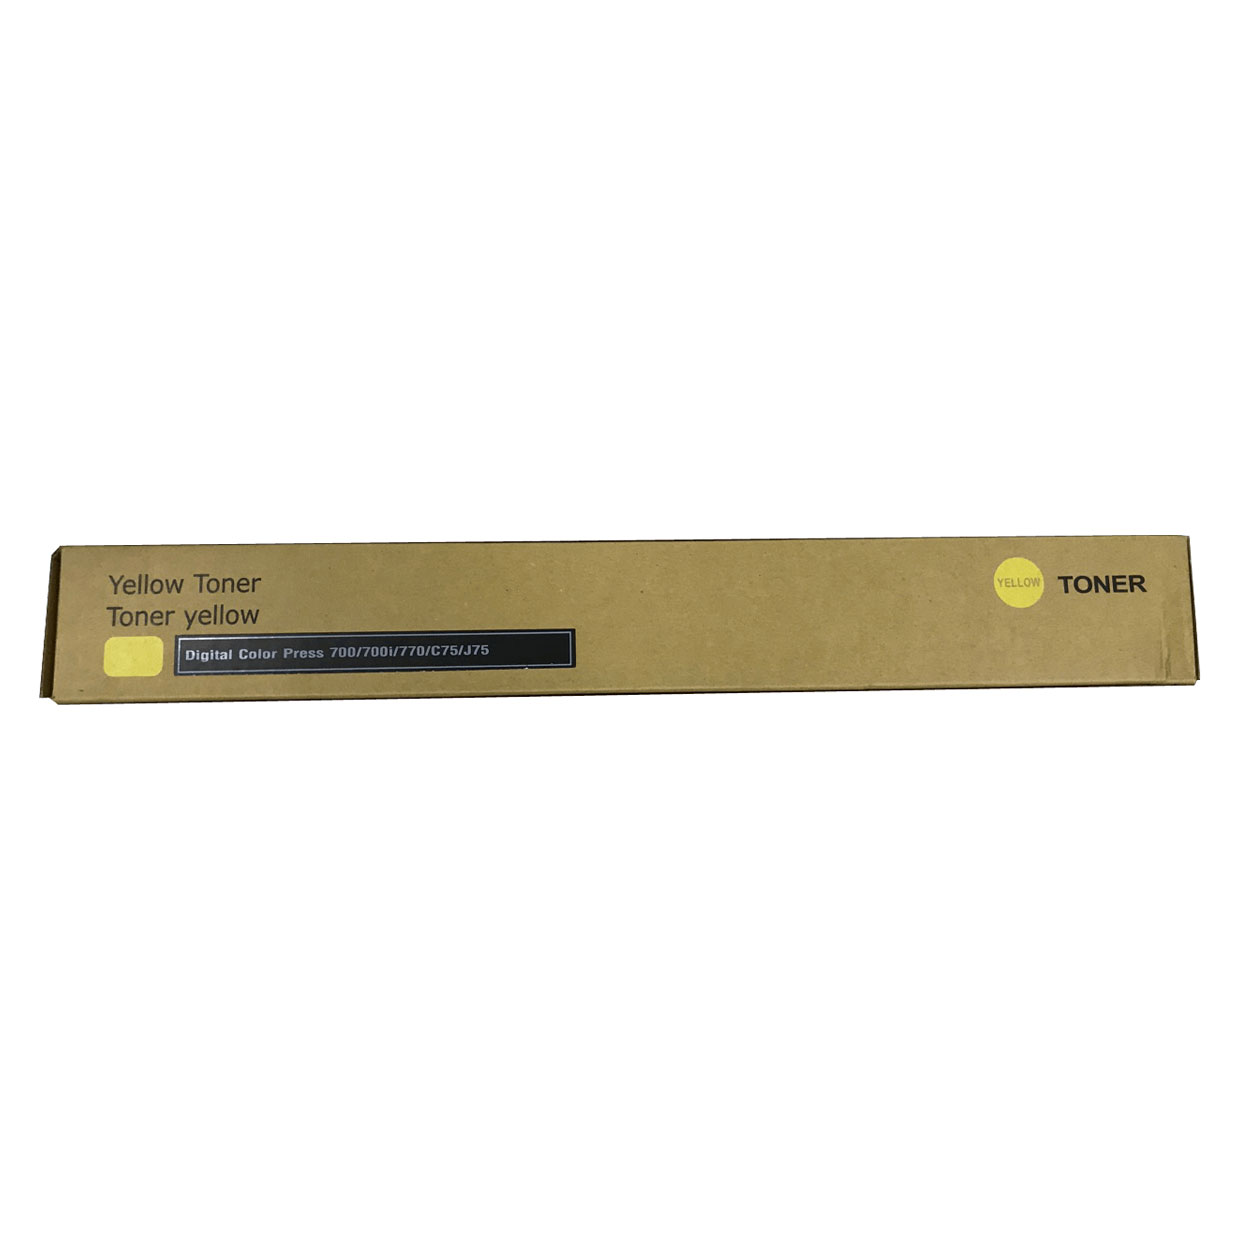 Тонер картридж желтый (Yellow) для Xerox 700/ 700i/ 770 Pro/ C75/ J75 (006R01382/ 006R01378). Фото №2